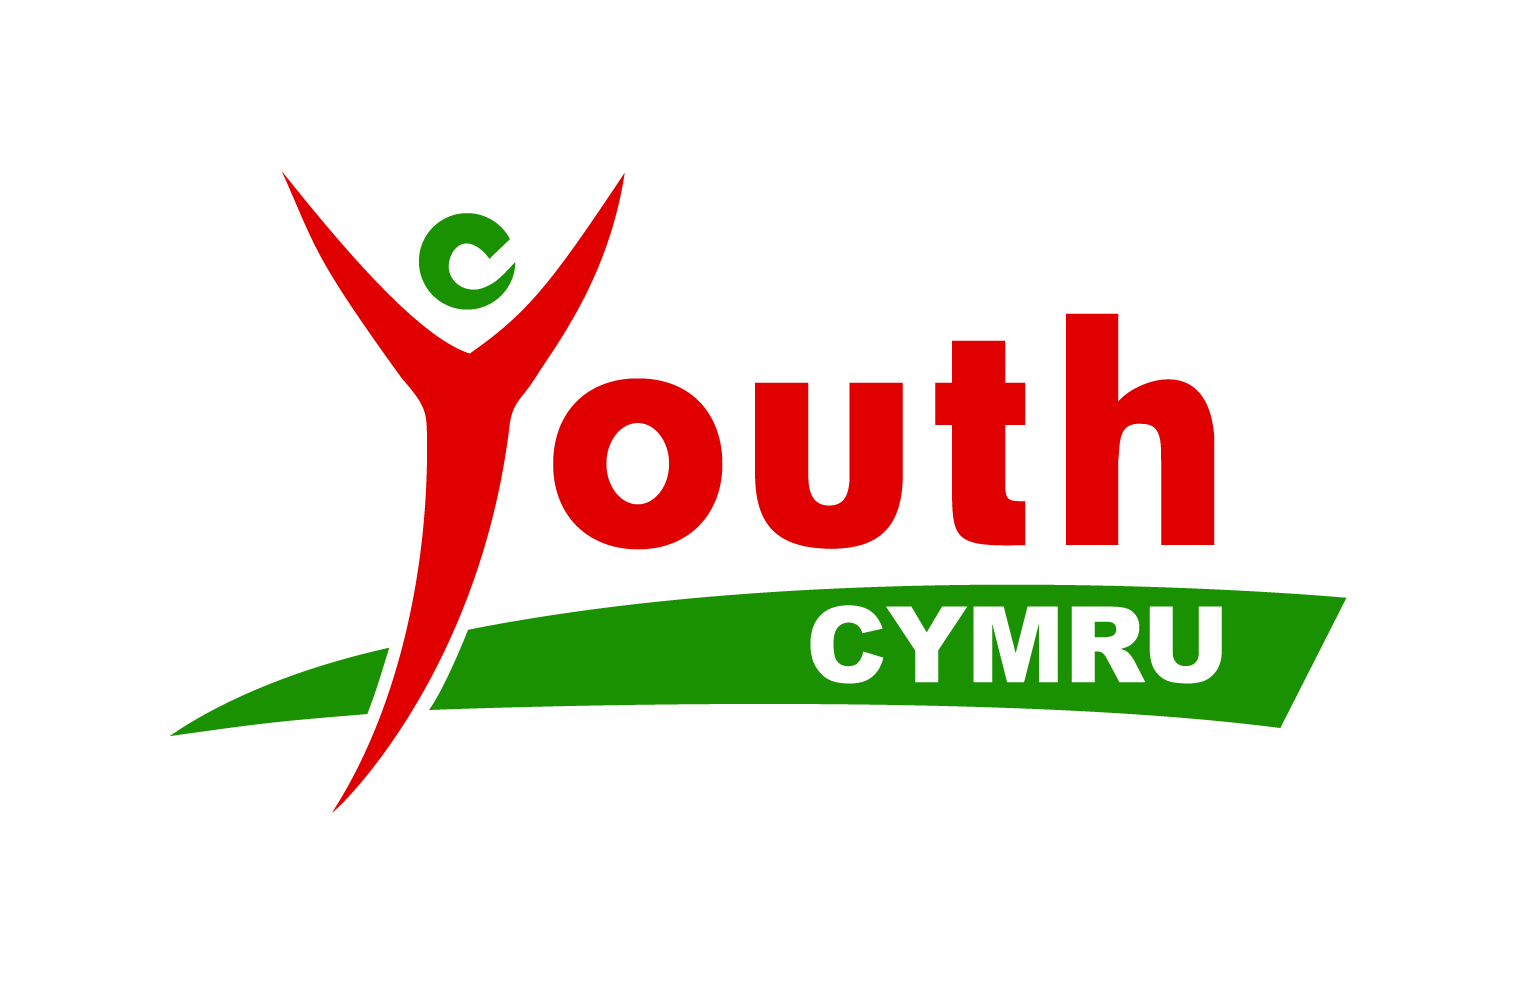 In early 2017 Loteri Cymru la